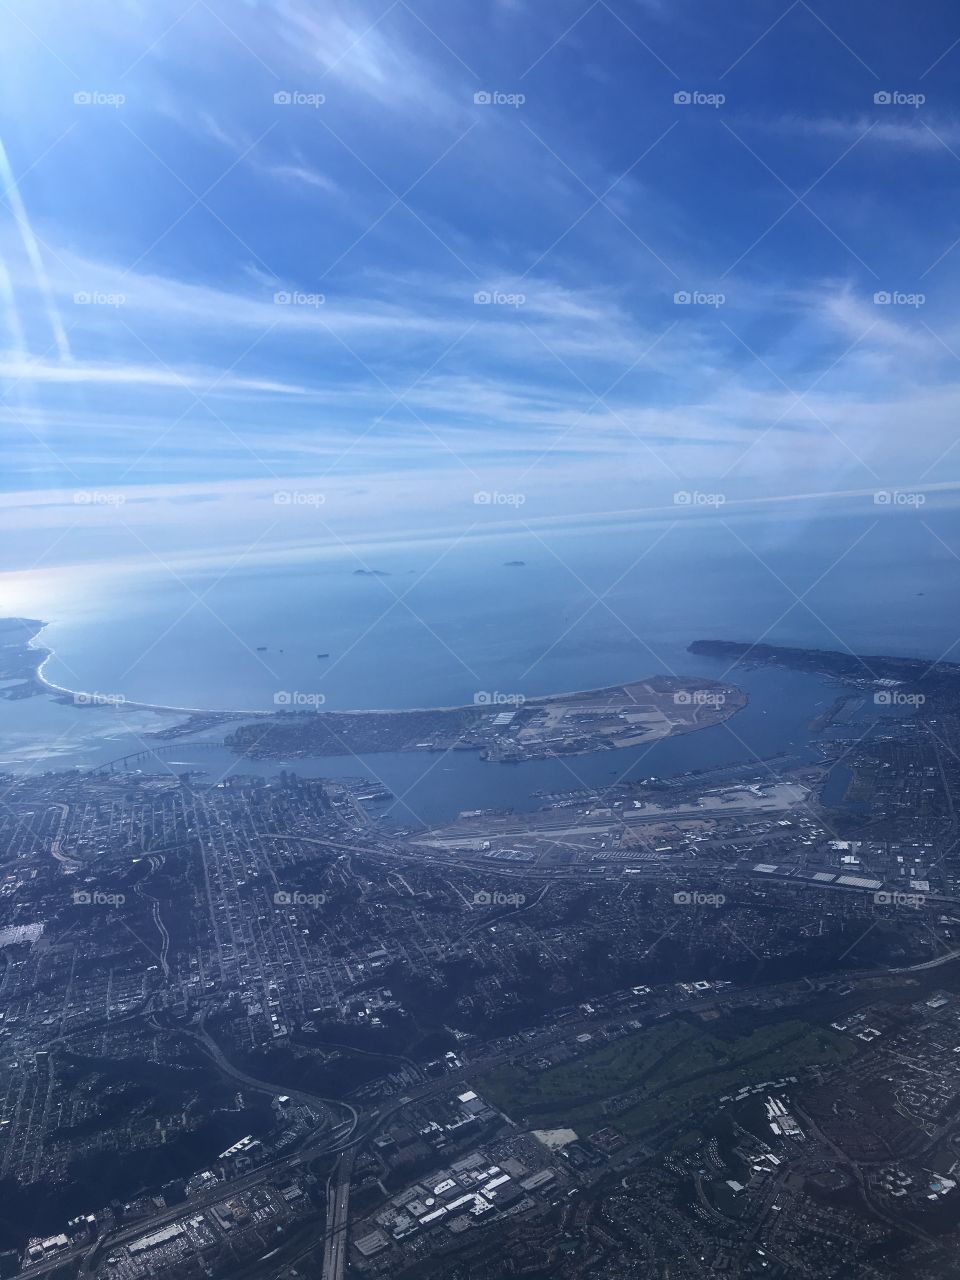 San Diego - Aerial